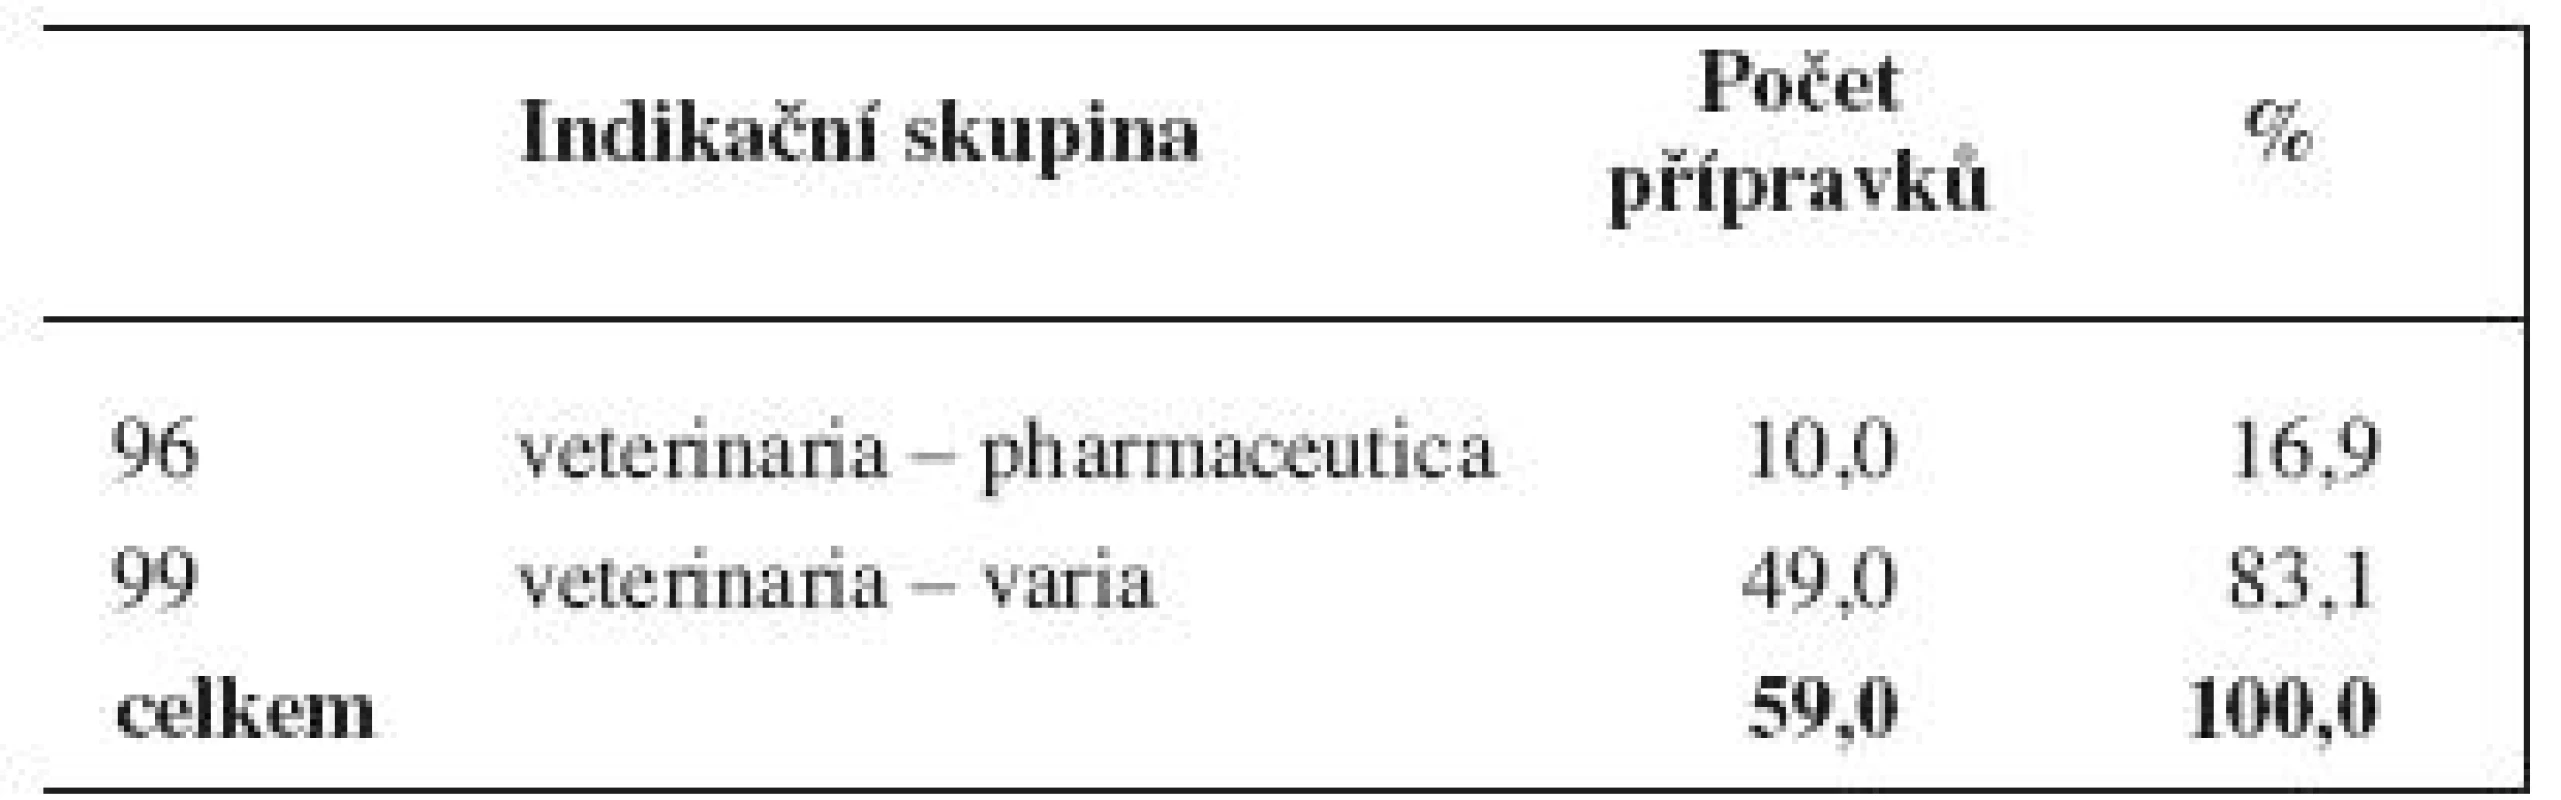 Veterinární vyhrazená léčiva (ke dni 21. 1. 2011) podle indikačních skupin